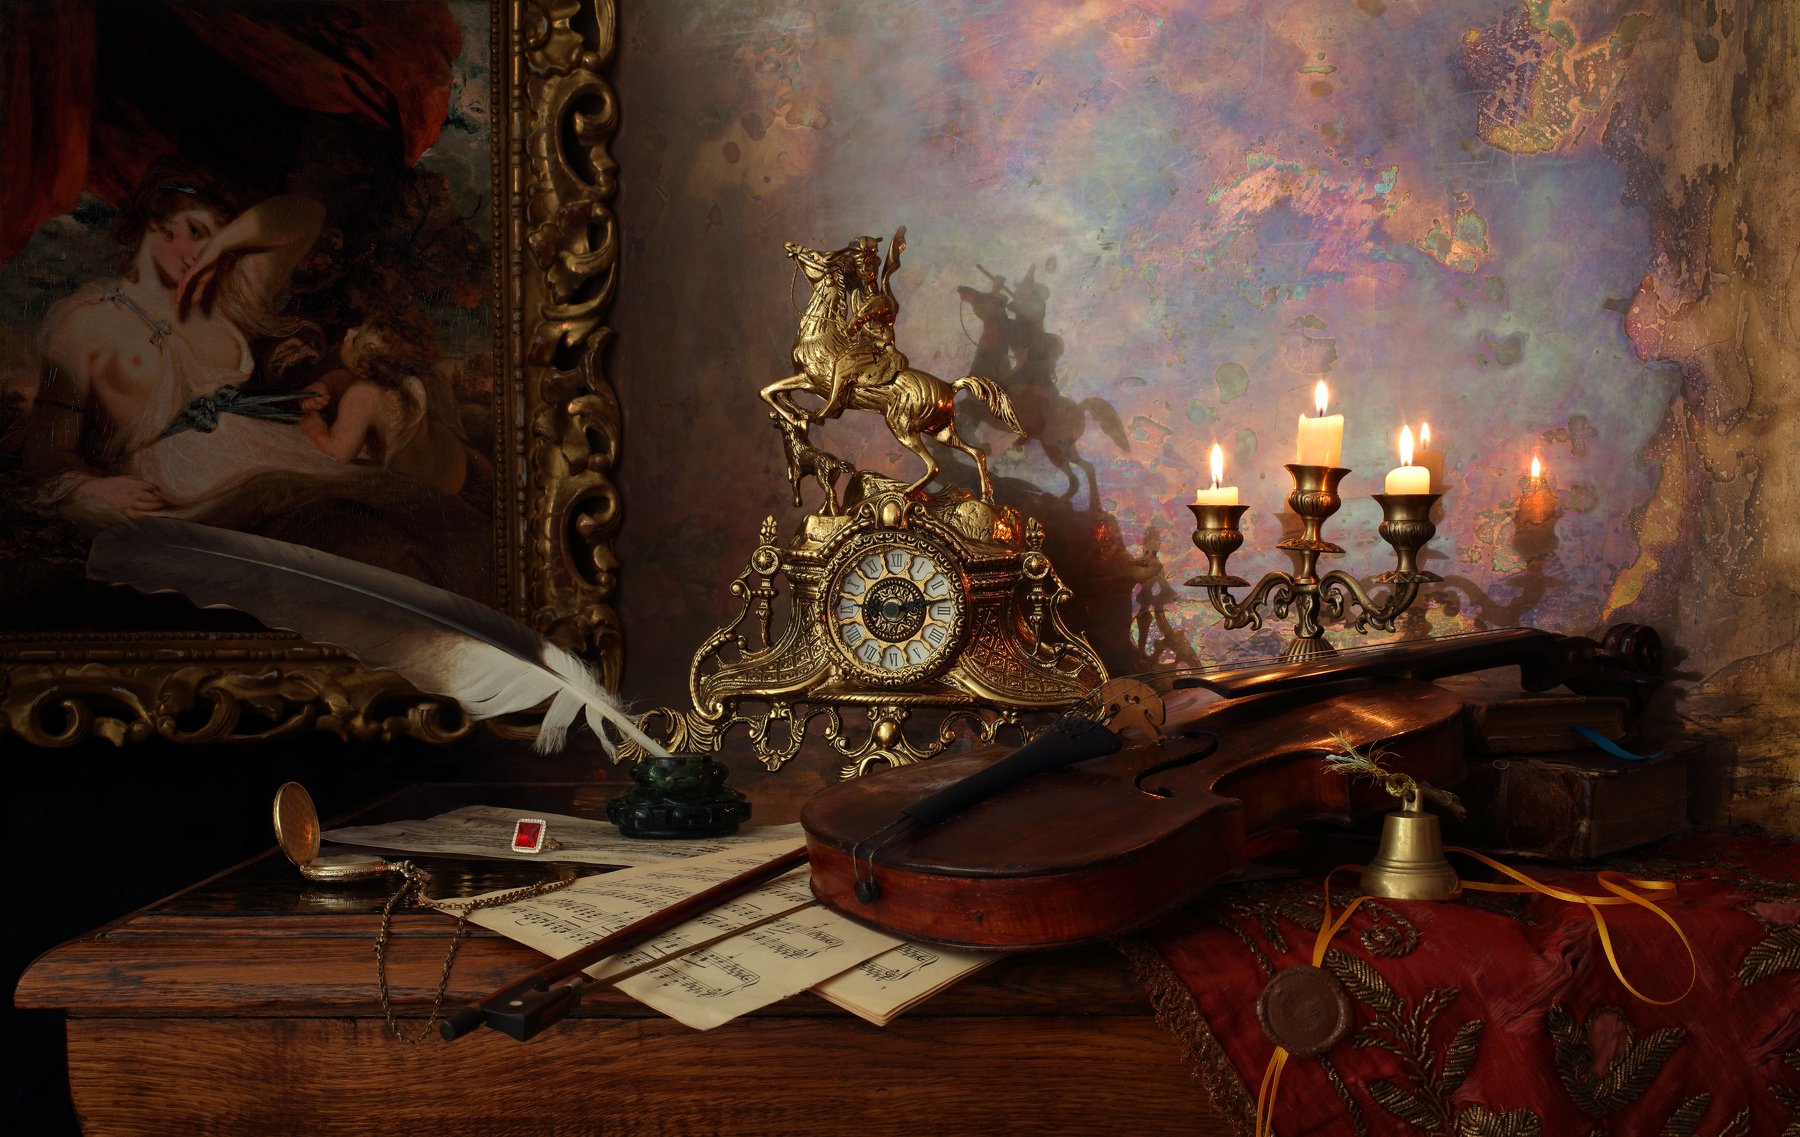 скрипка, свечи, картина, часы, свет, музыка, Андрей Морозов